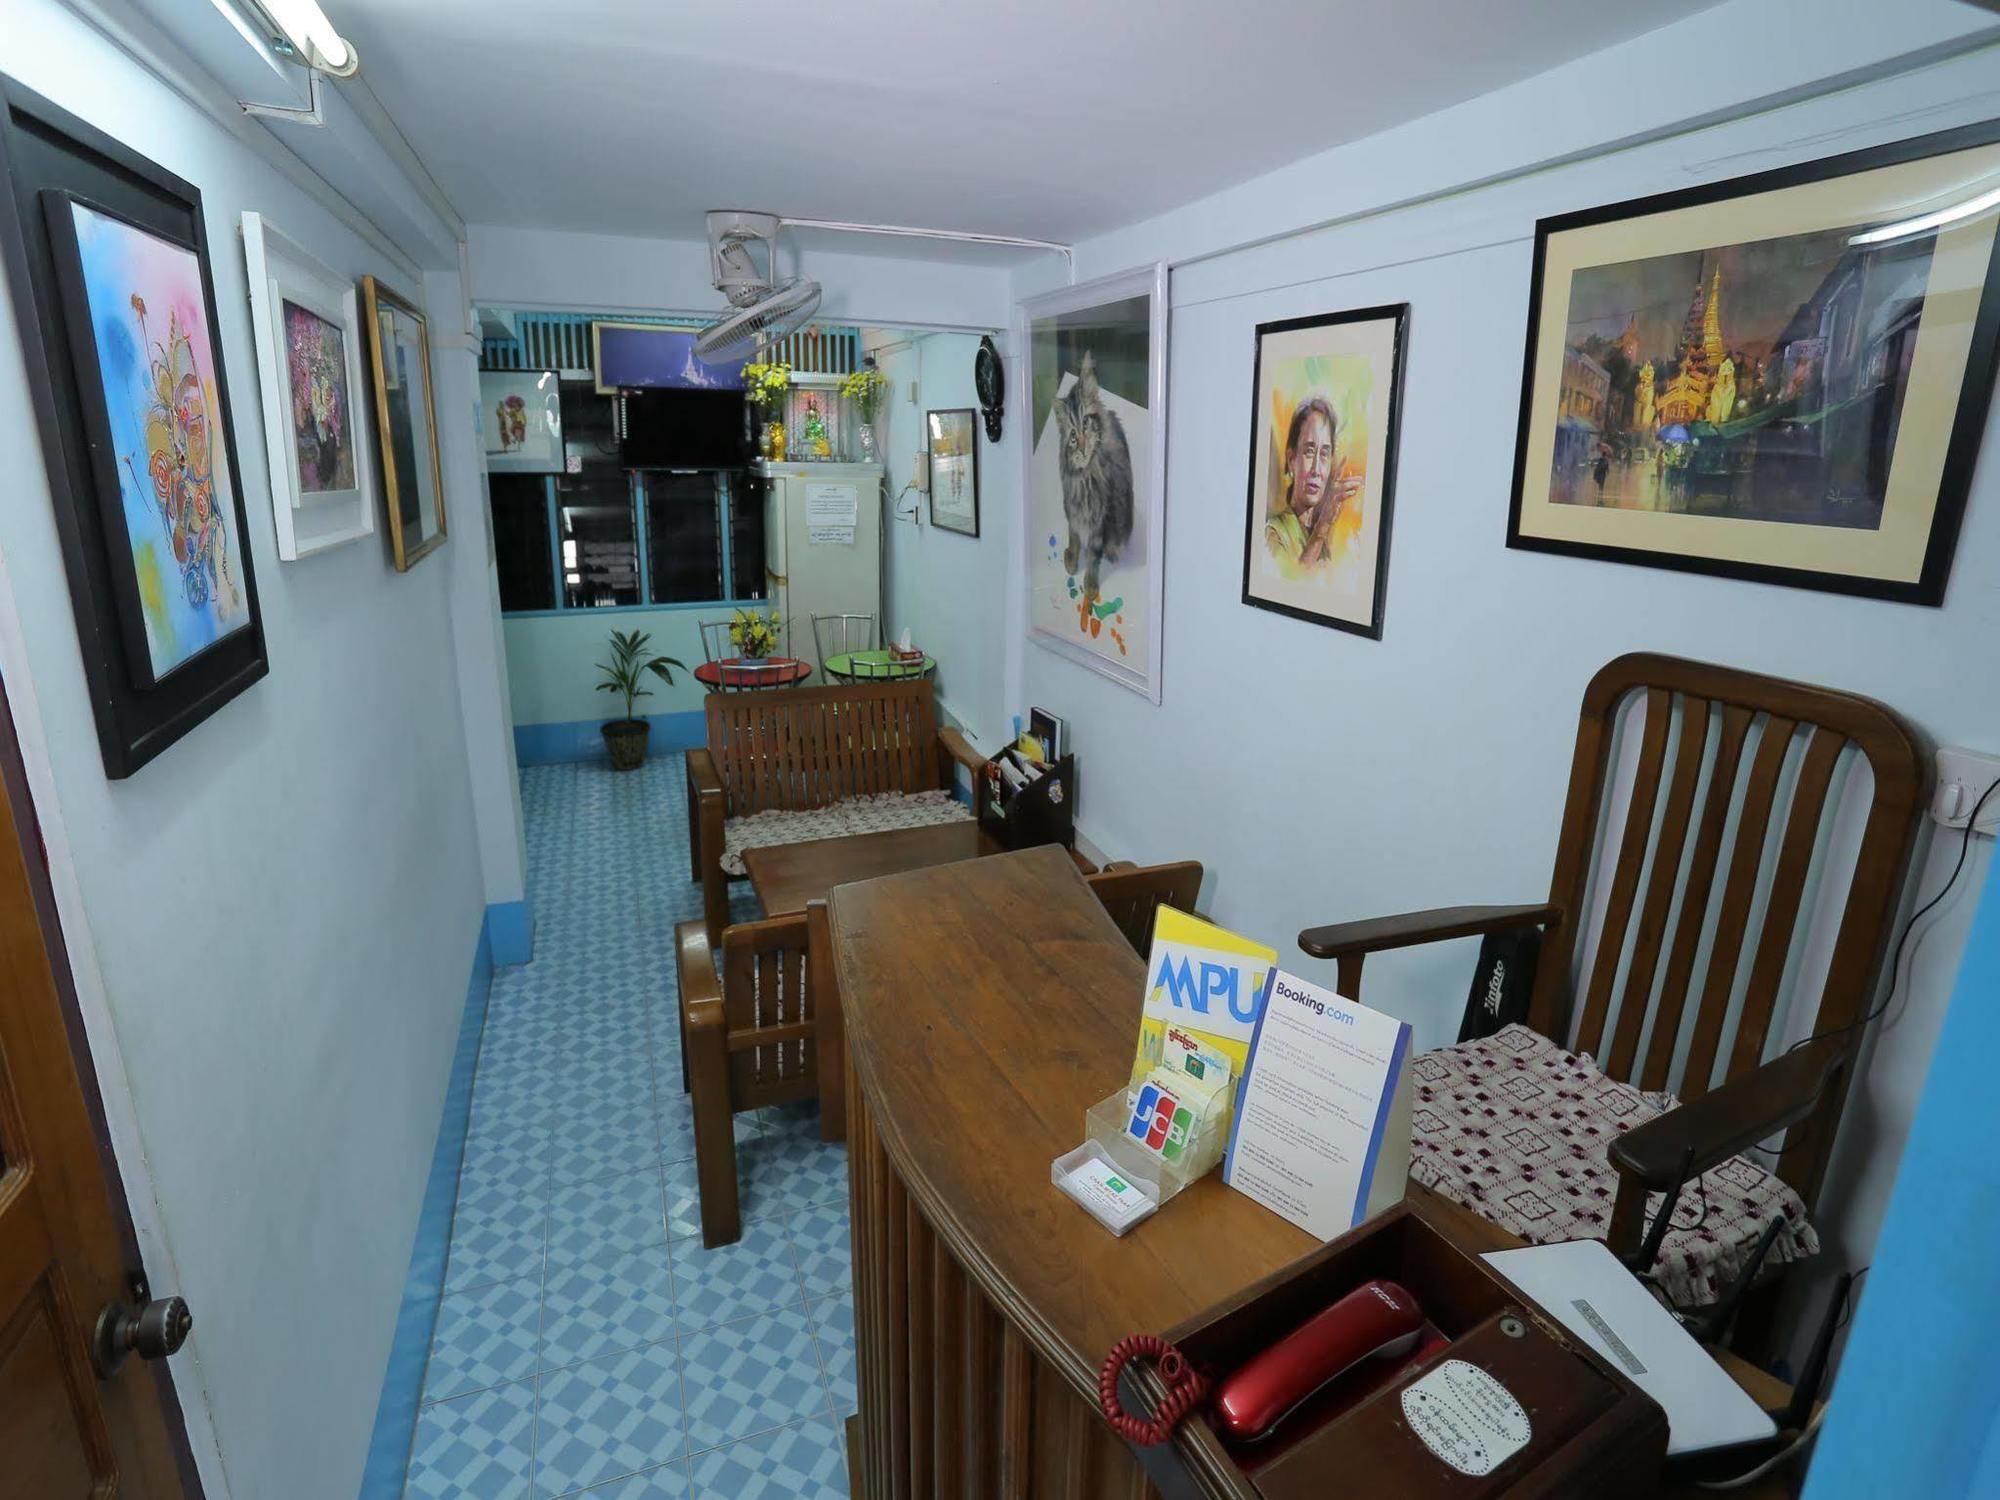 Chan Myae Thar Guest House Rangun Kültér fotó